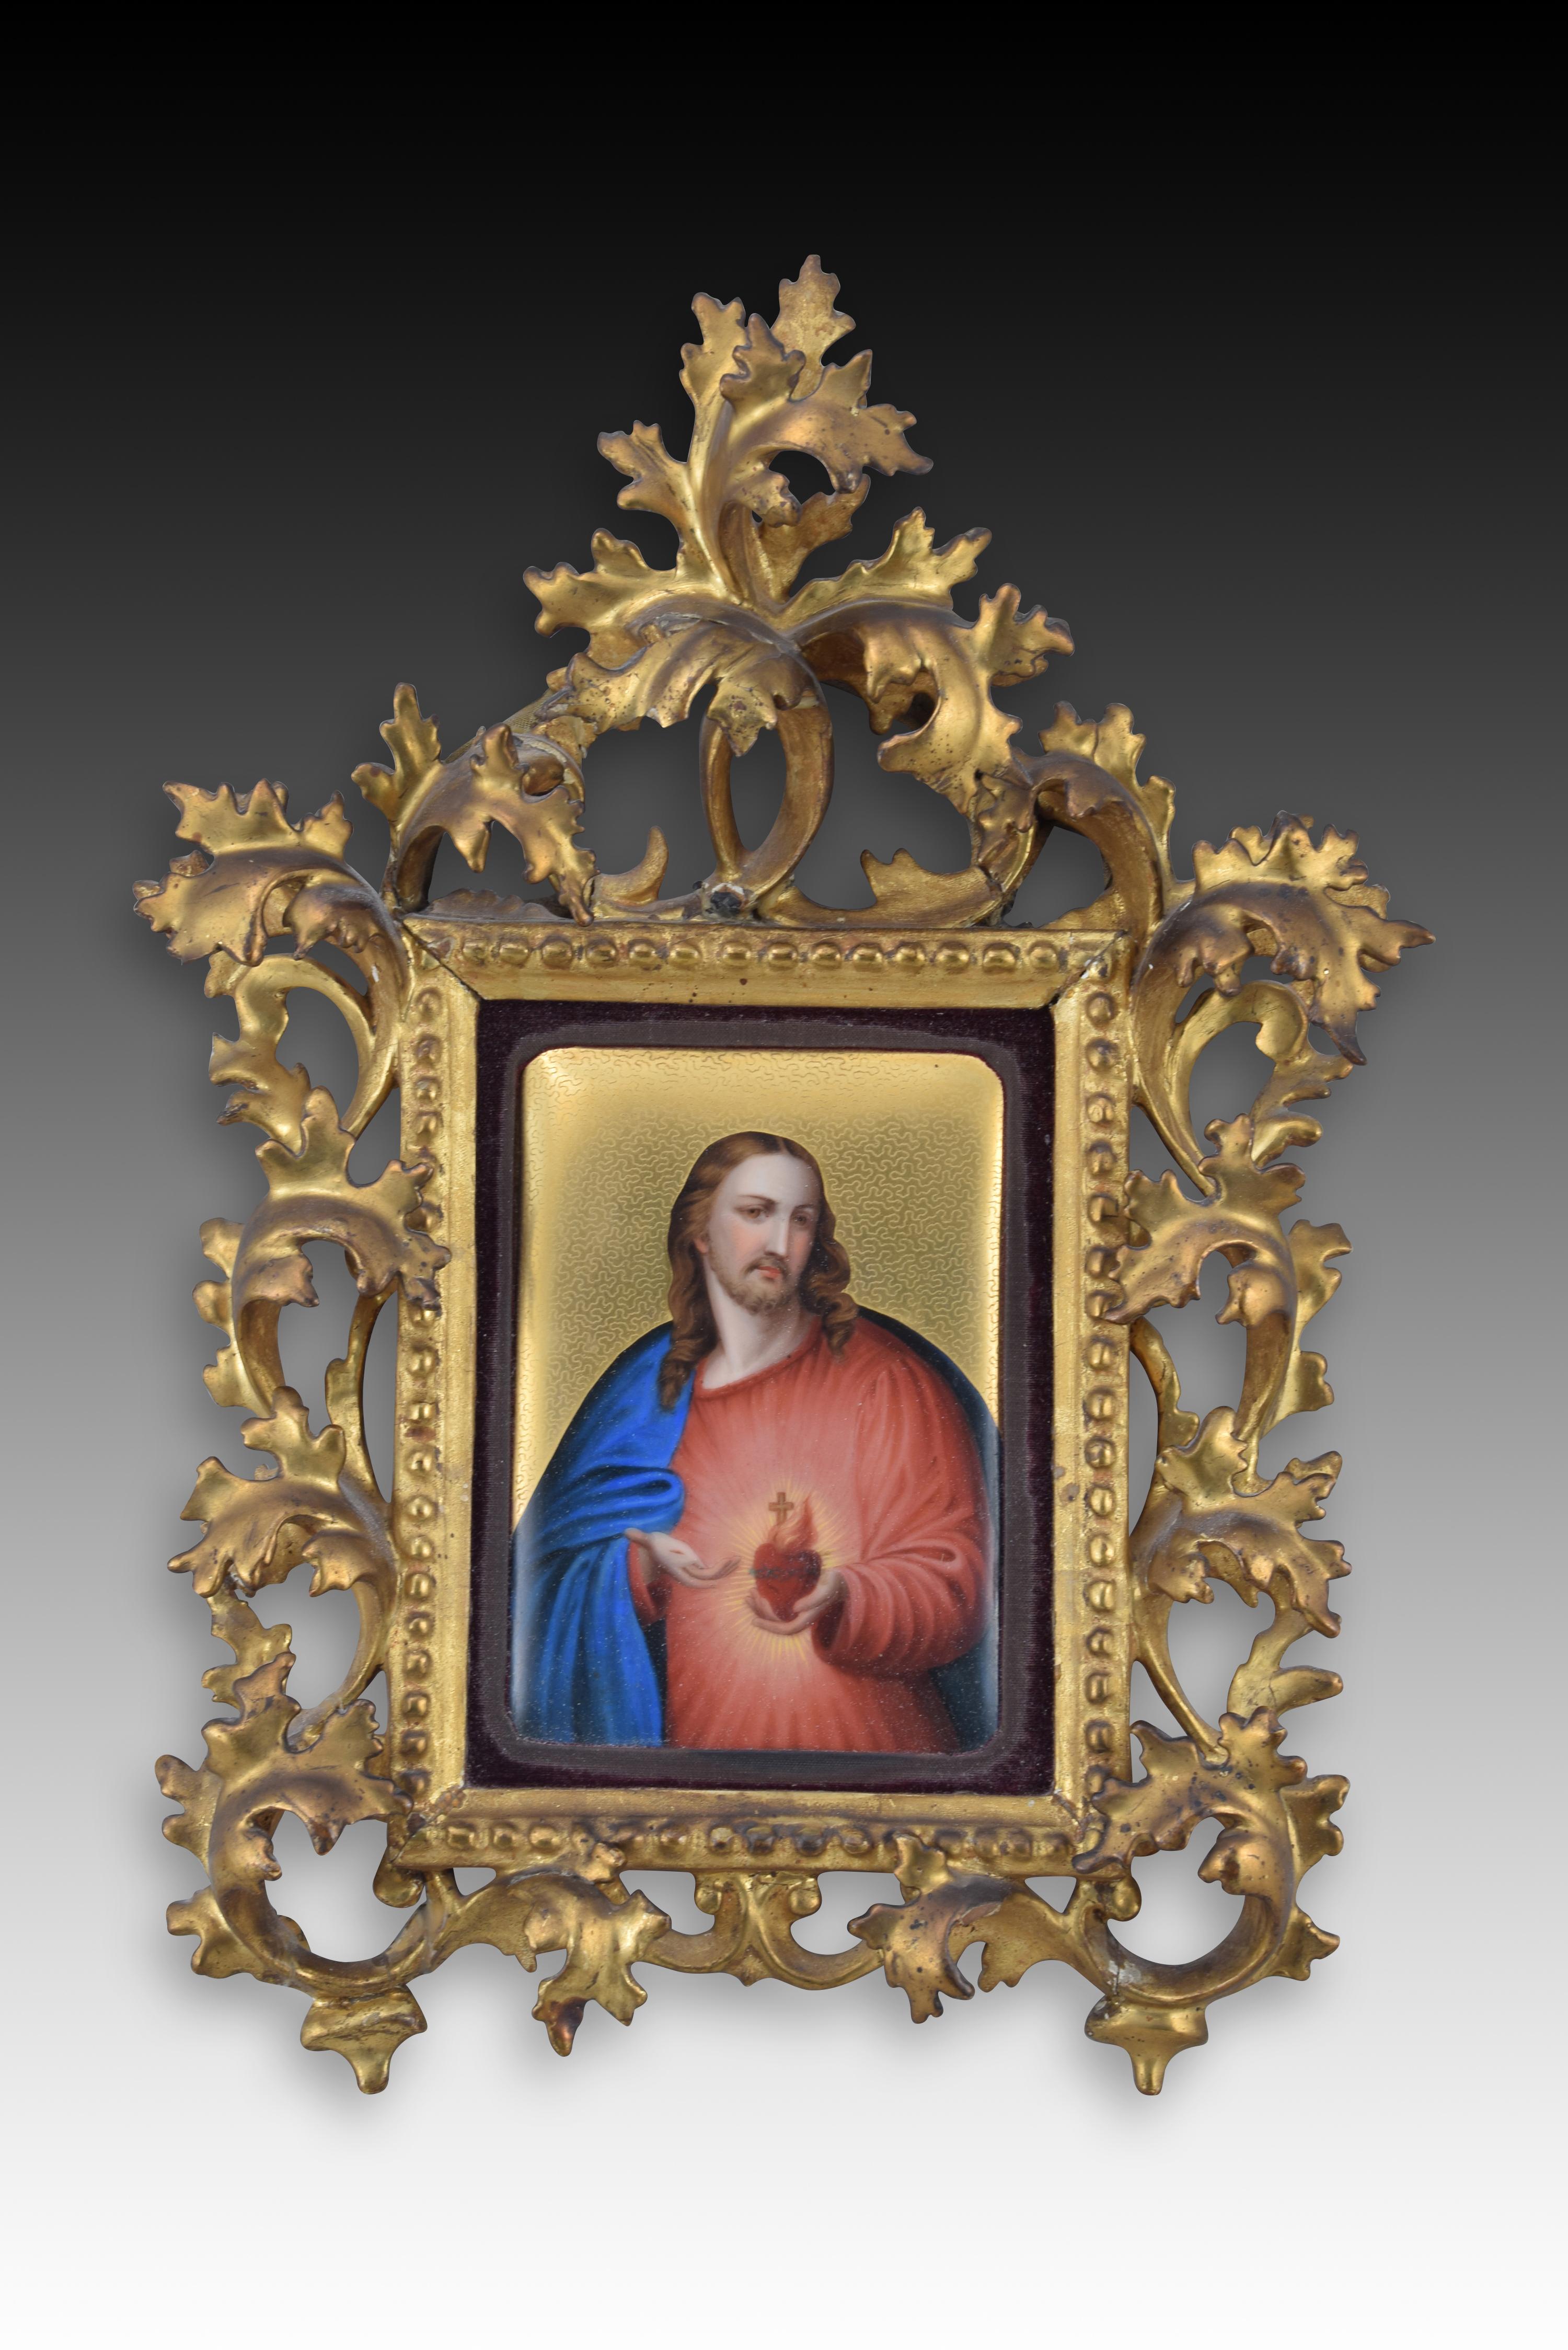 Heilige Herzen Jesu und Marias. Emaille, Holz. Spanische Schule, 19. Jahrhundert.  (Neoklassisches Revival)